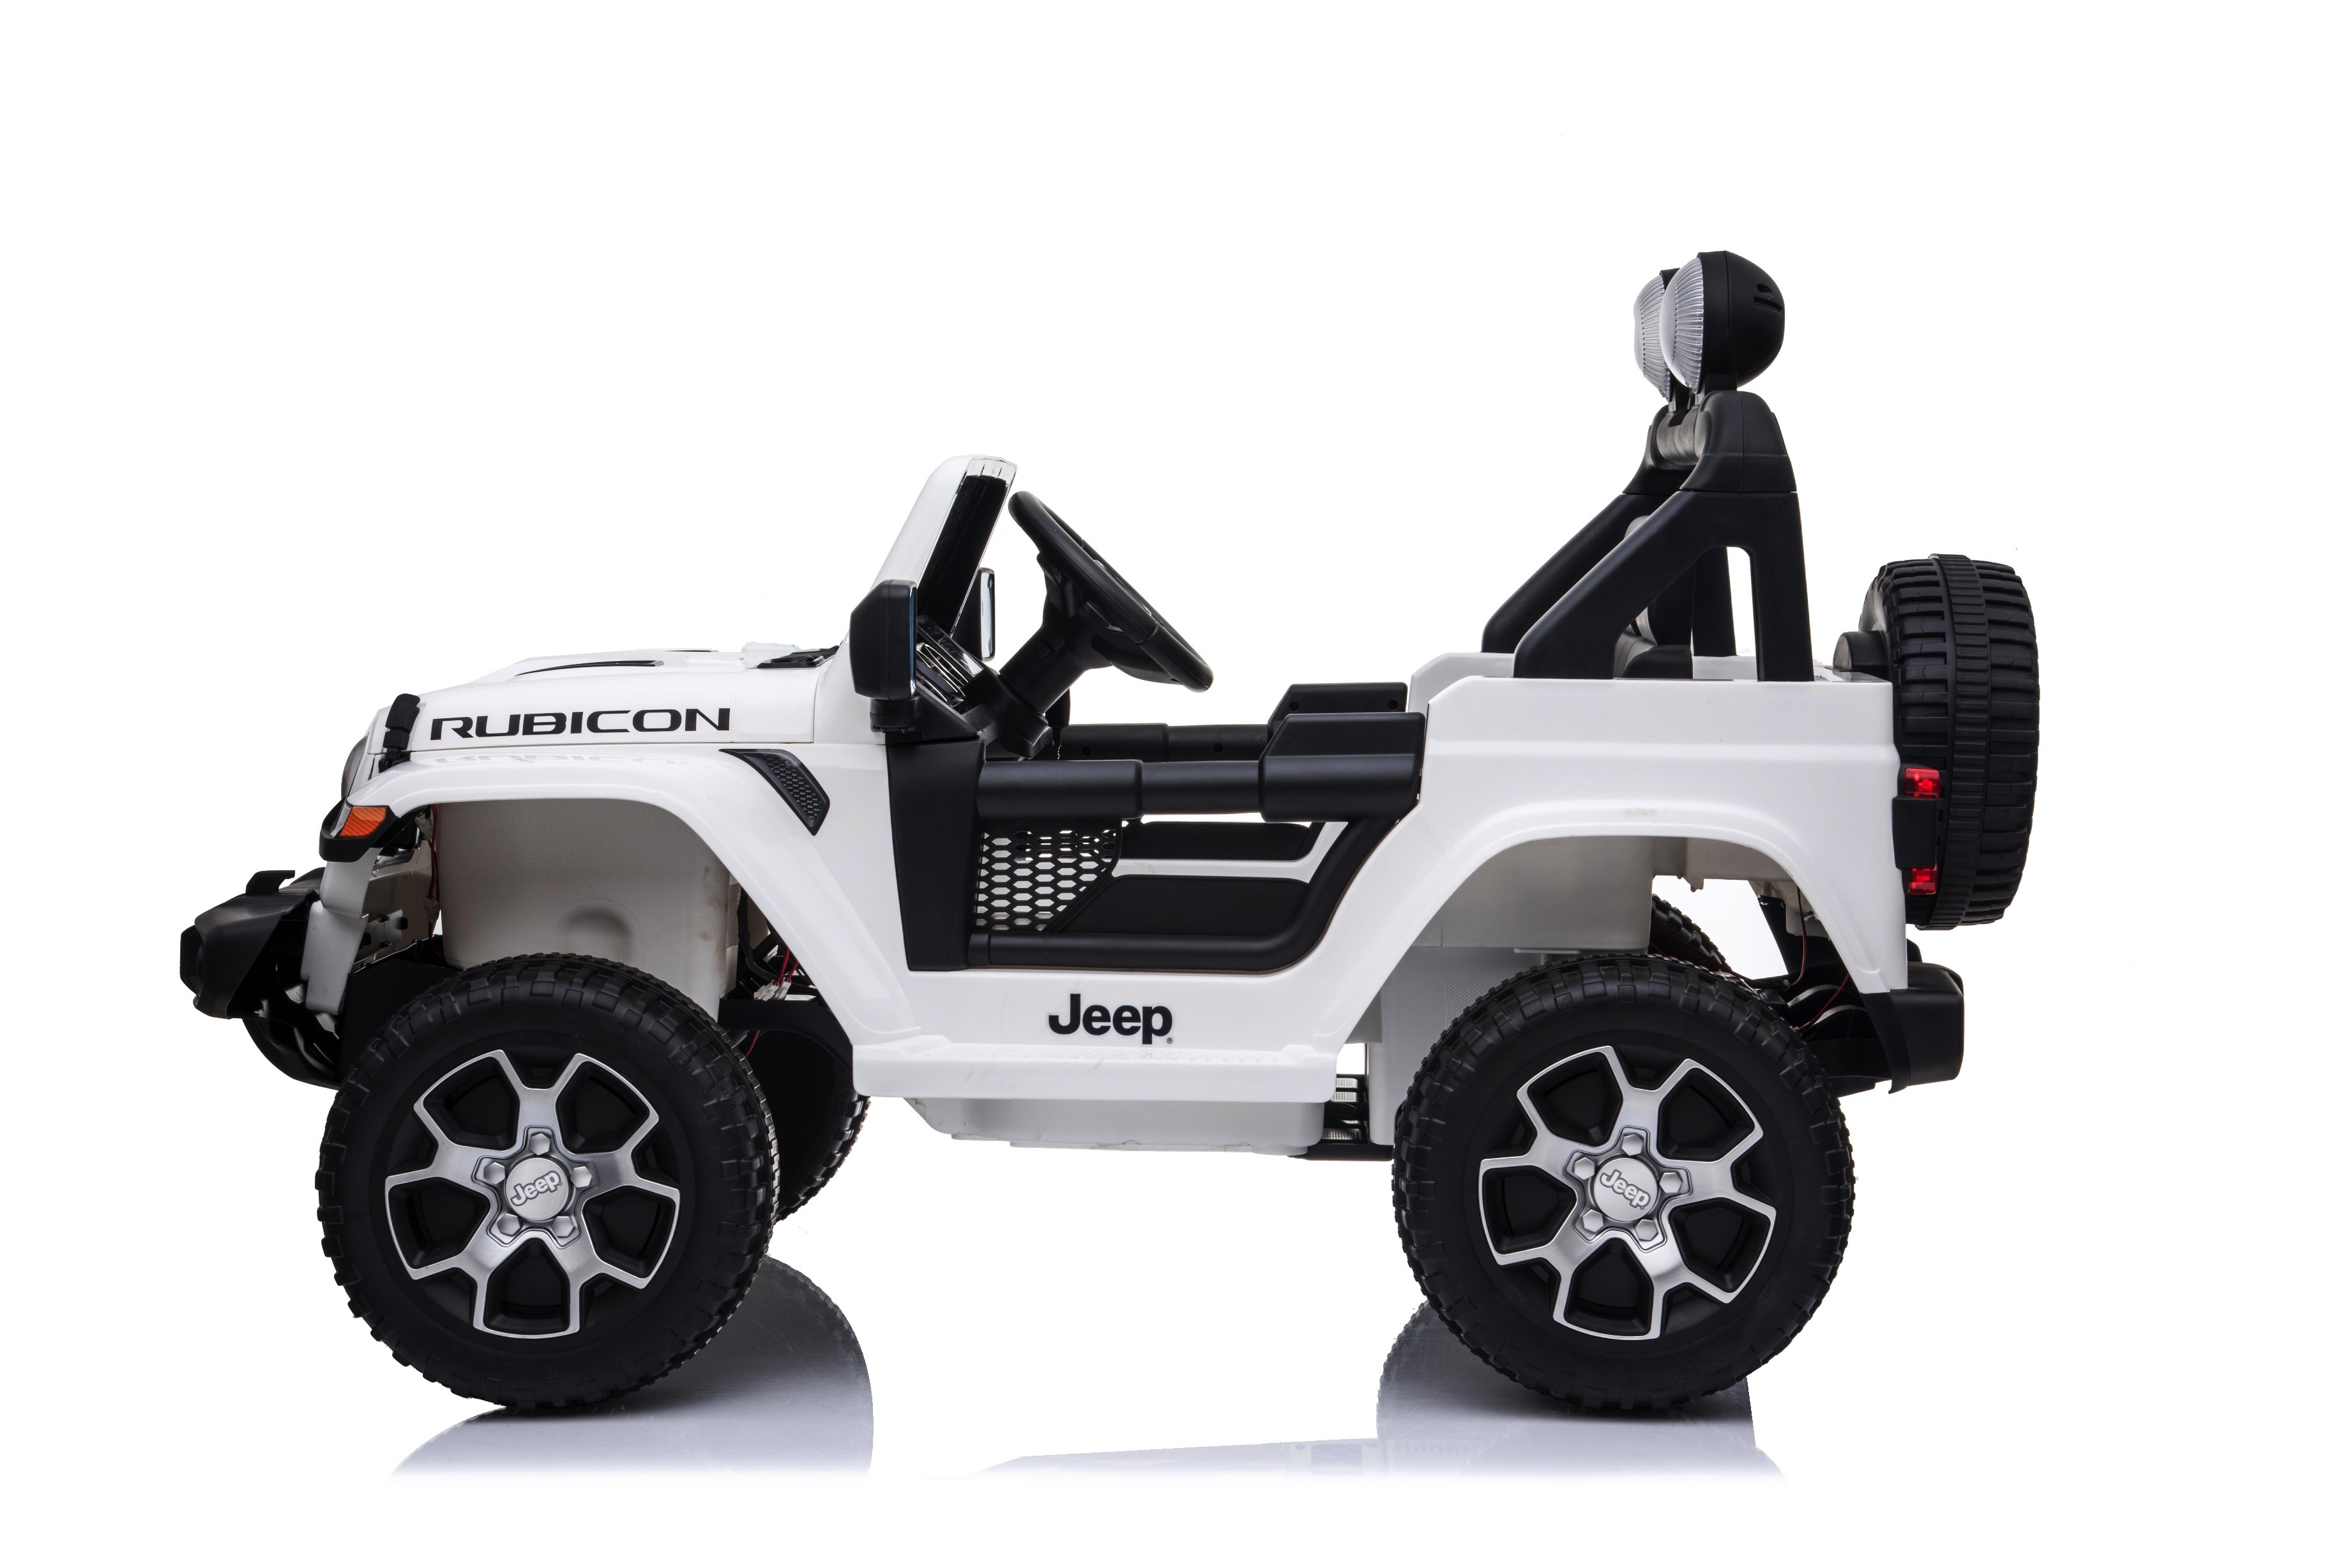 Auto Elettrica per Bambini Jeep Suv Veicolo per Bambini con